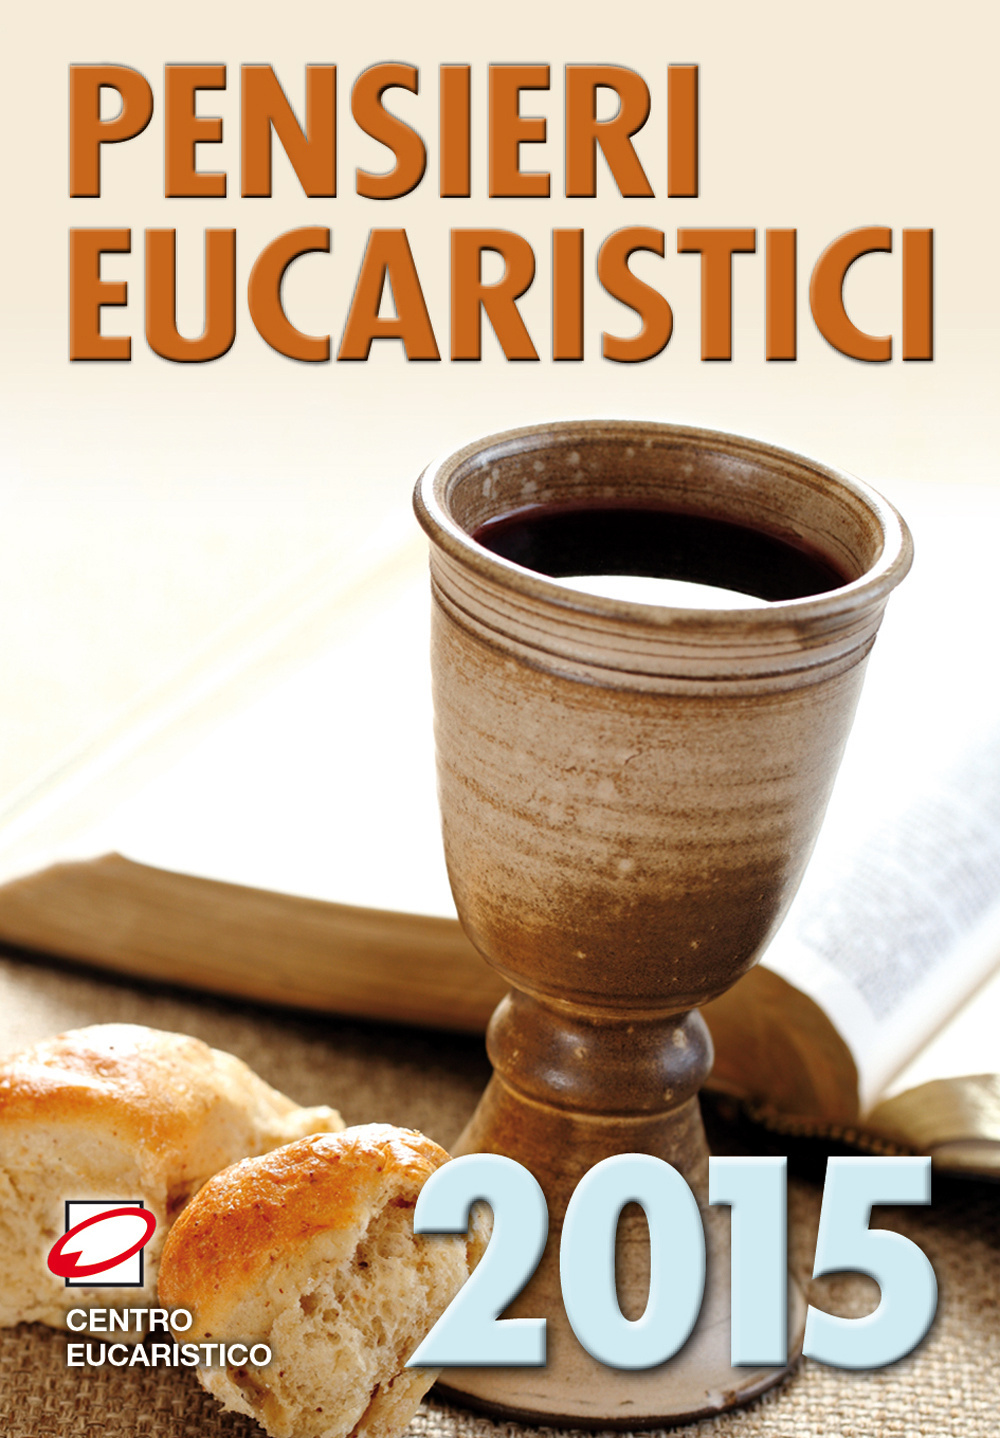 Pensieri eucaristici 2015